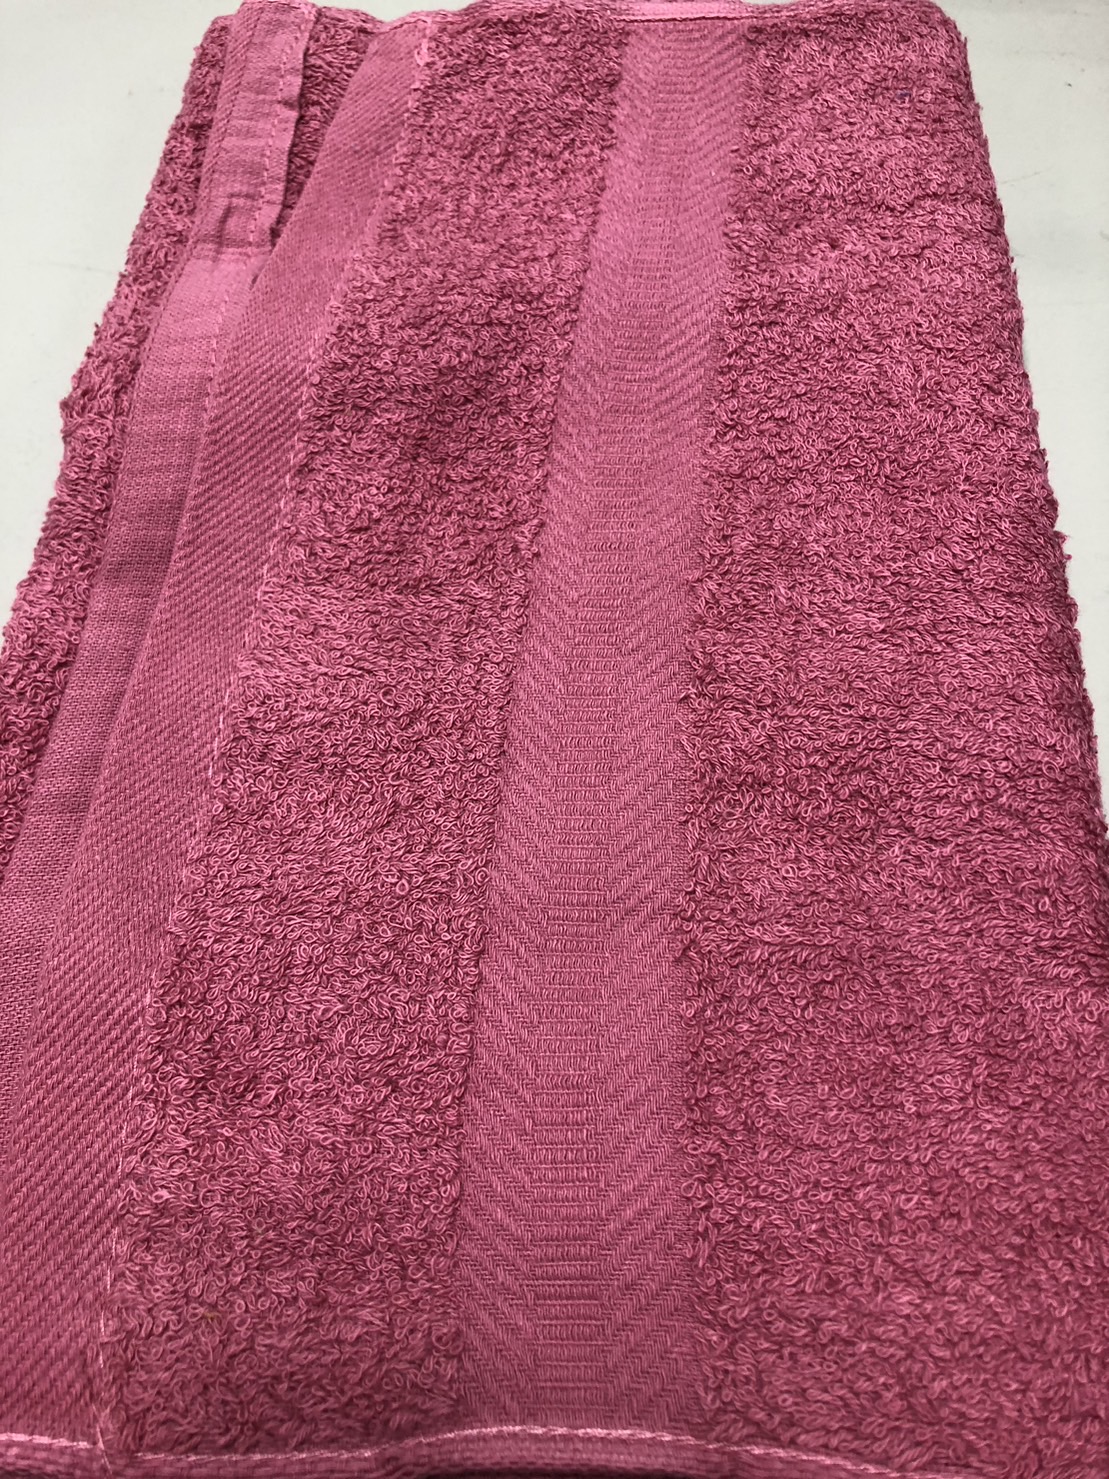 歐風素緞毛巾